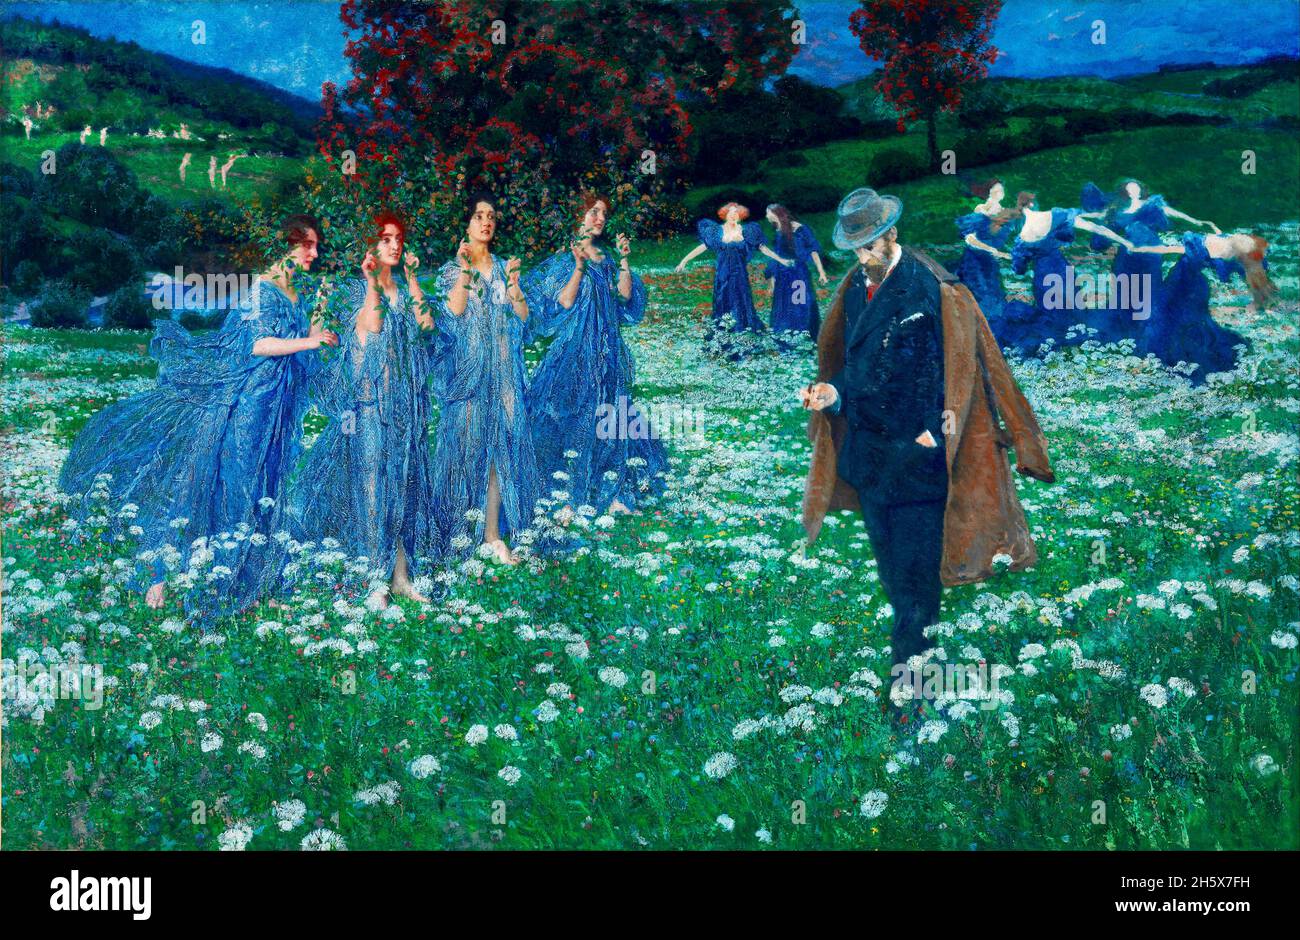 Maximilian Lenz Artwork - A World - 1899 - Ein passender Gentleman spaziert durch eine Blumenwiese inmitten blau getuschter Jungfrauen, einige von ihnen kreistanzend. Stockfoto